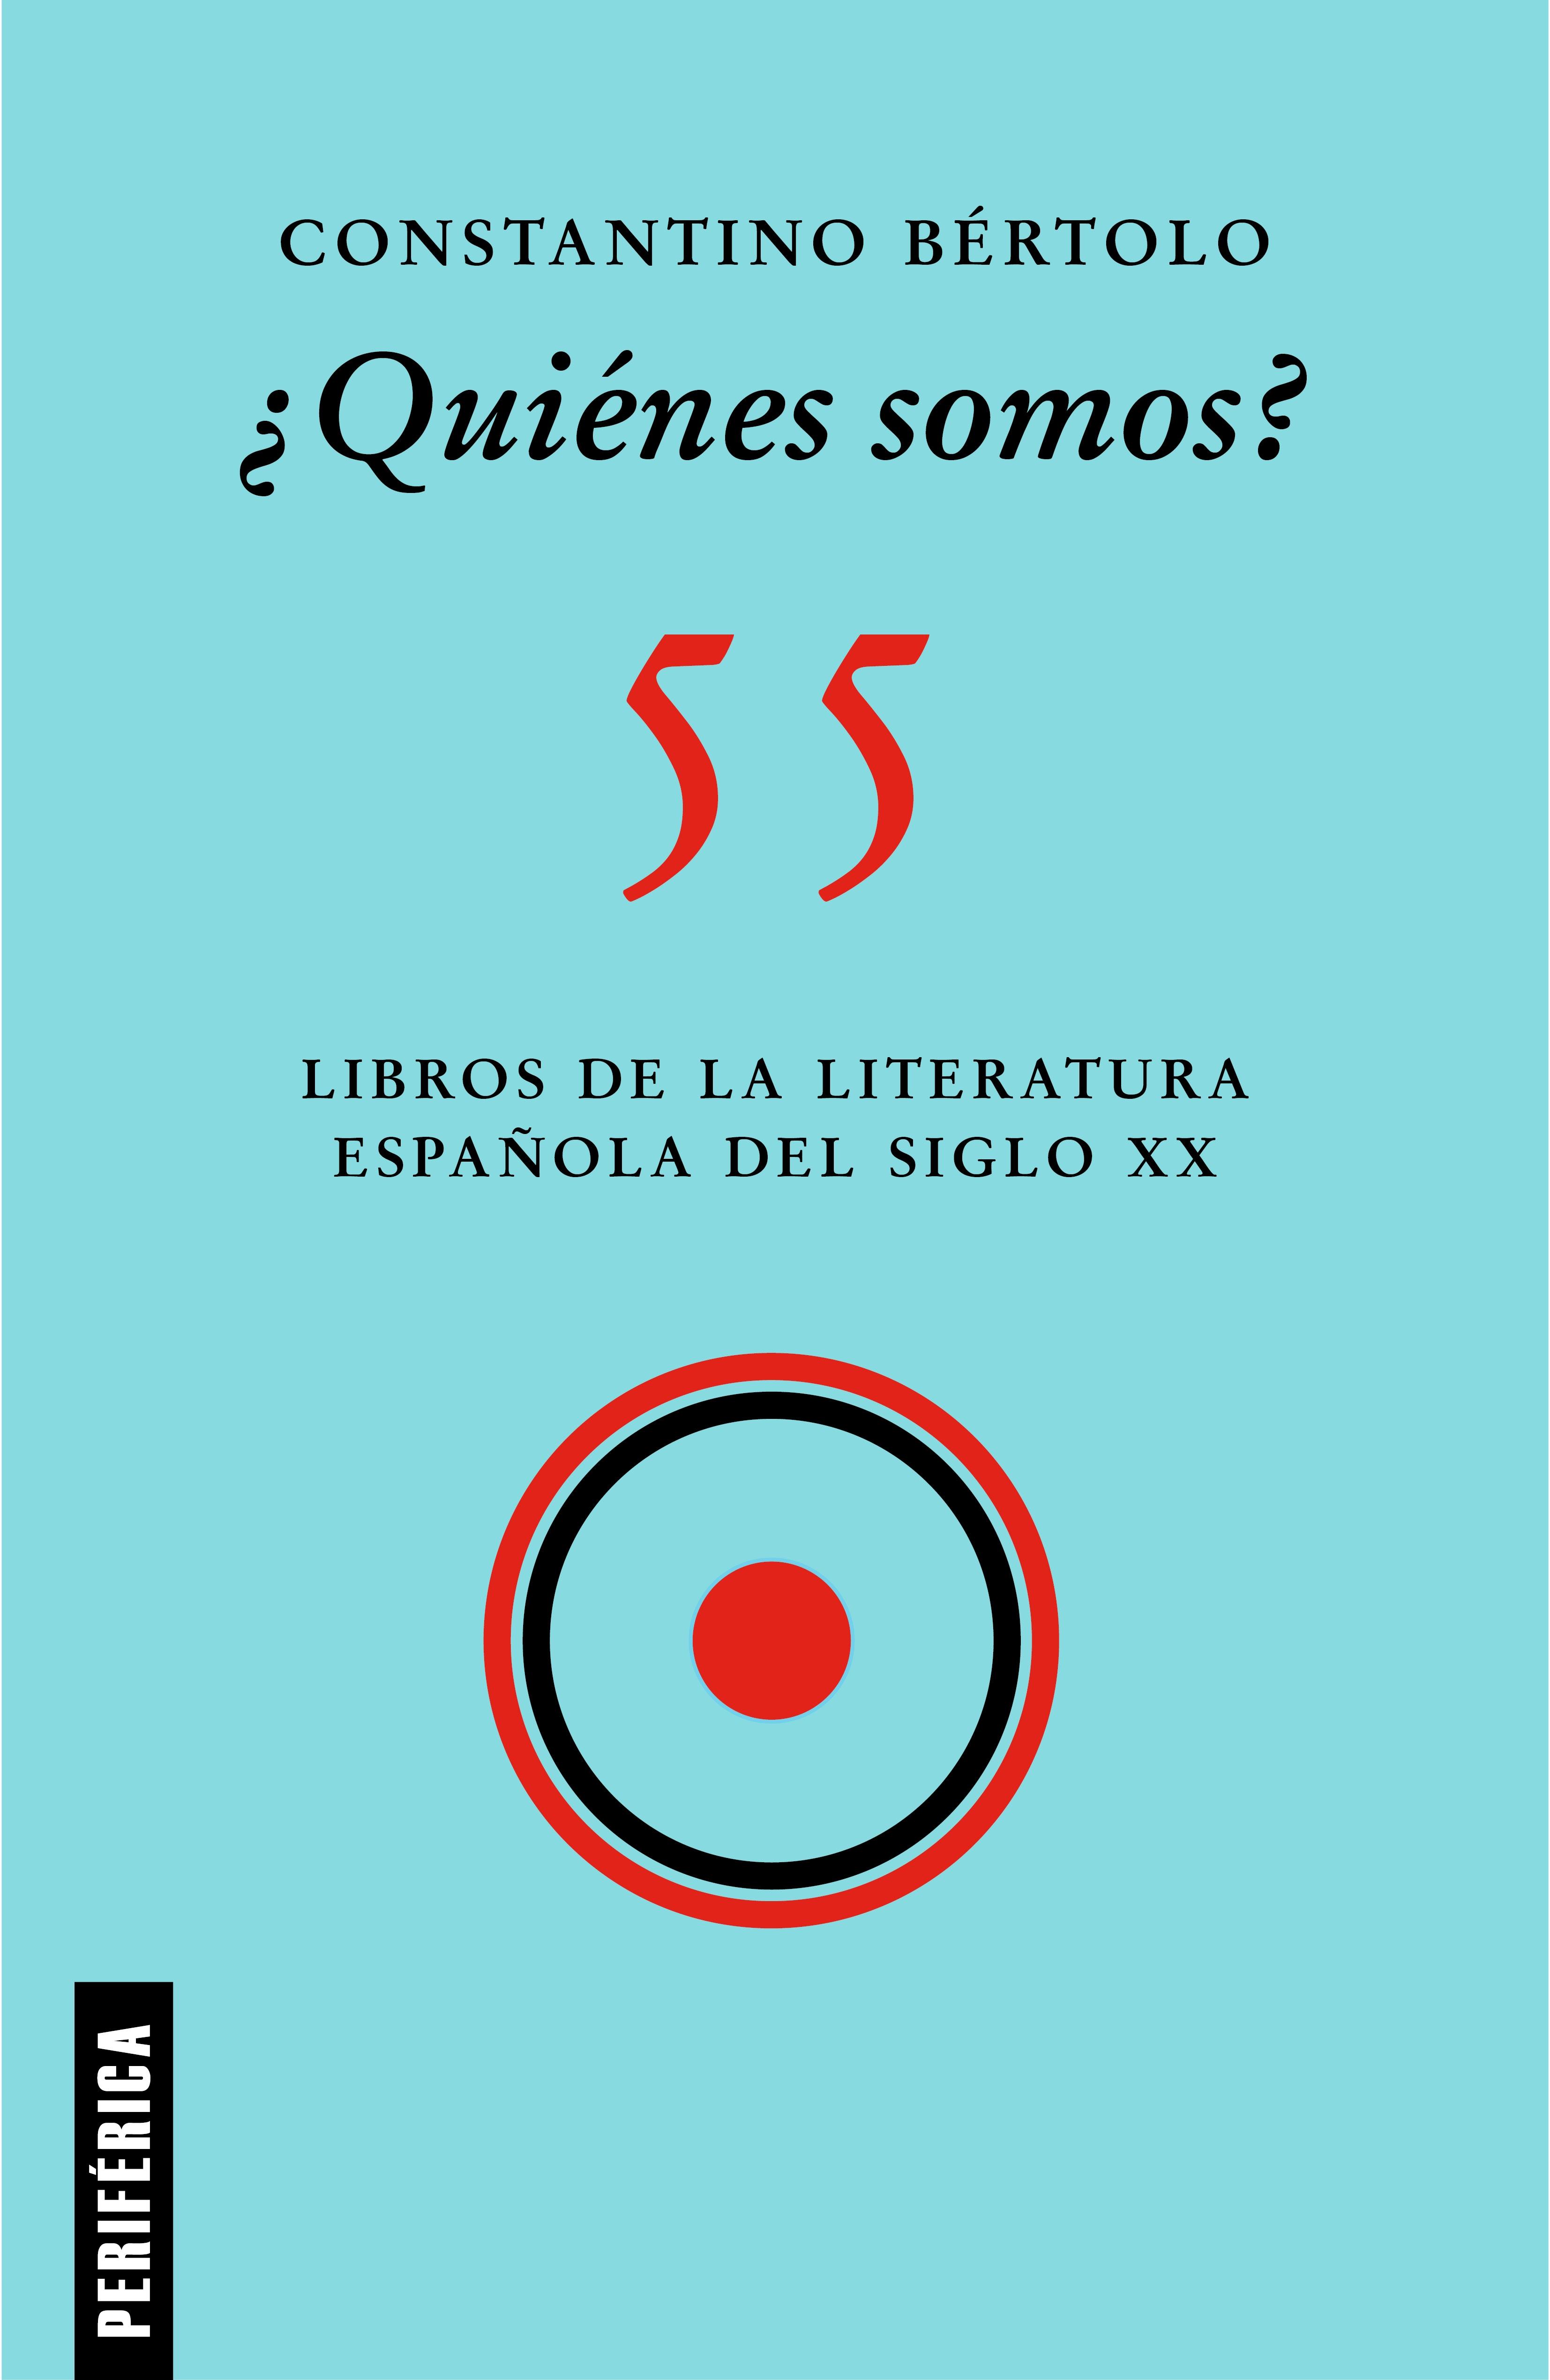 ¿Quiénes Somos? "55 Libros de la Literatura Española del Siglo Xx". 